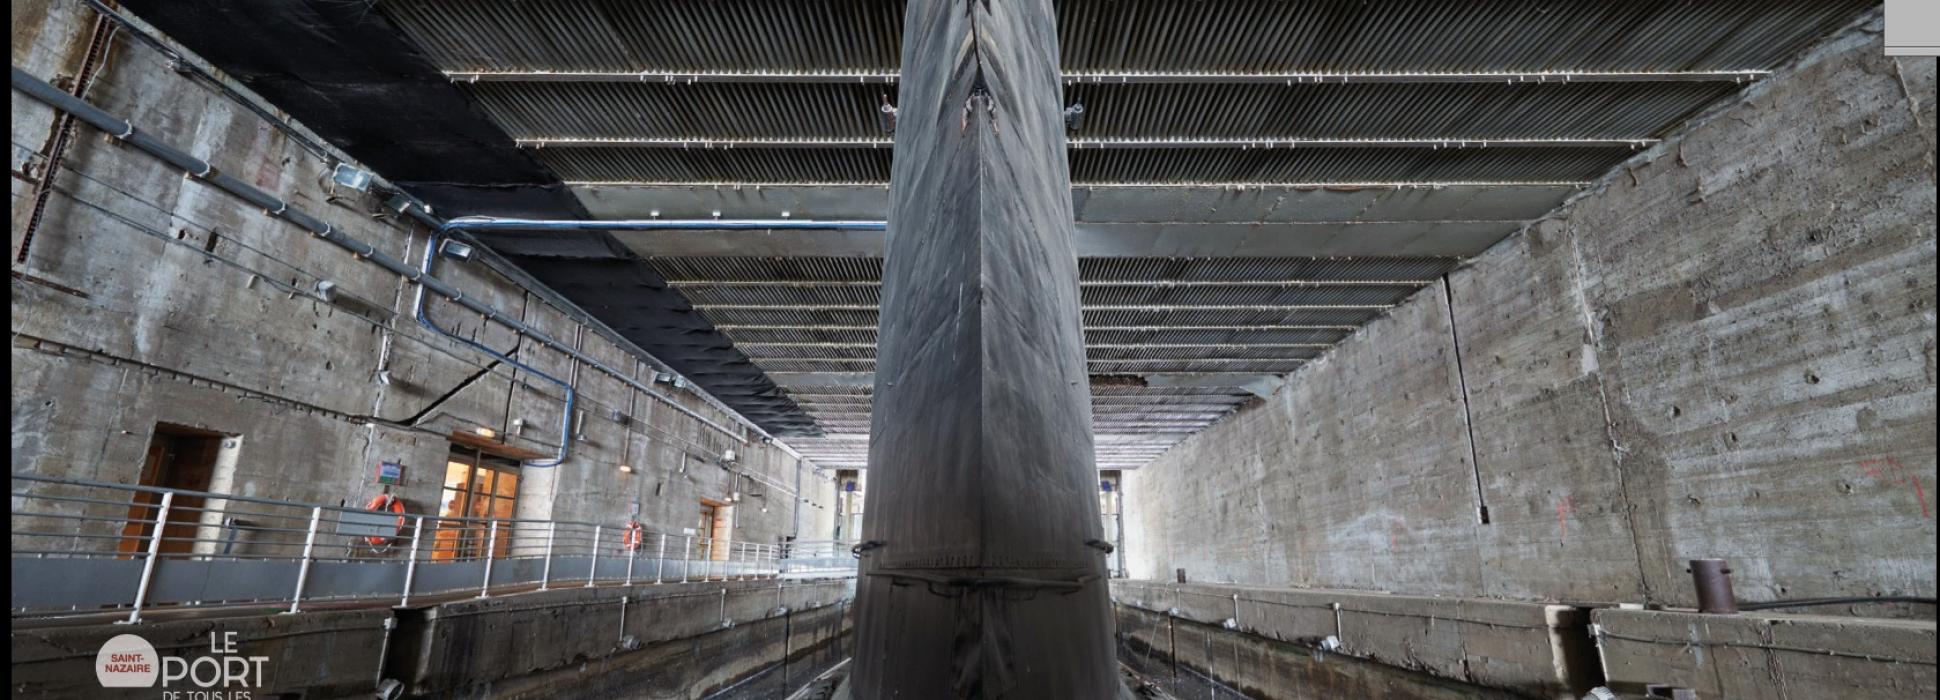 Les secrets des abysses avec le sous-marin l’Espadon dans une exposition à Saint-Nazaire